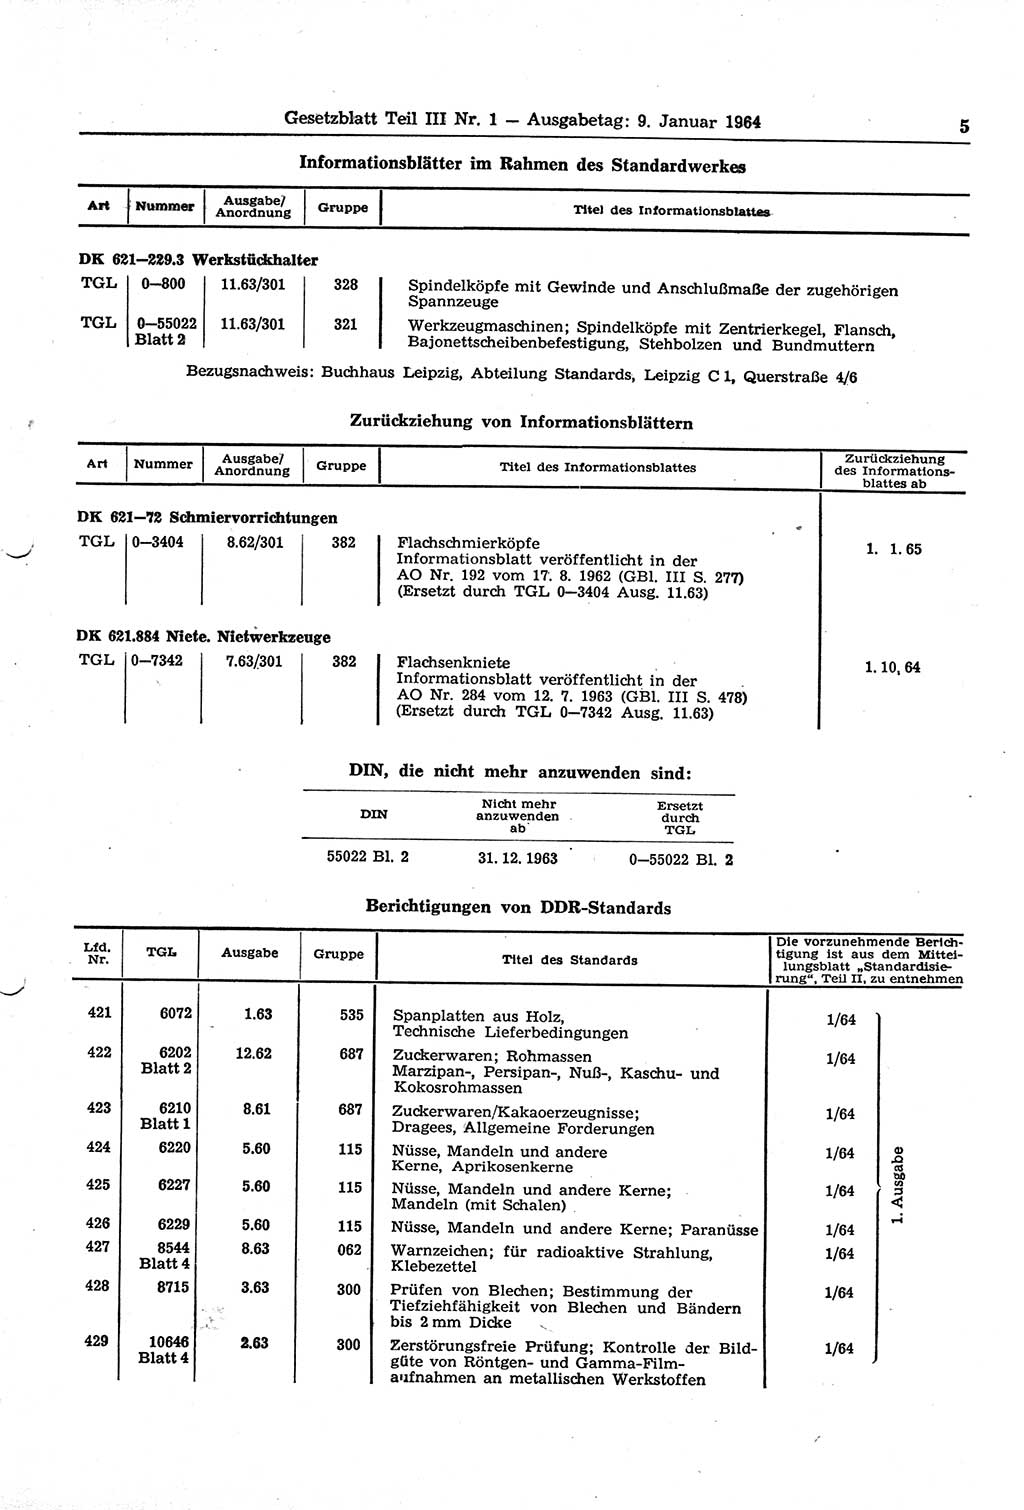 Gesetzblatt (GBl.) der Deutschen Demokratischen Republik (DDR) Teil ⅠⅠⅠ 1964, Seite 5 (GBl. DDR ⅠⅠⅠ 1964, S. 5)